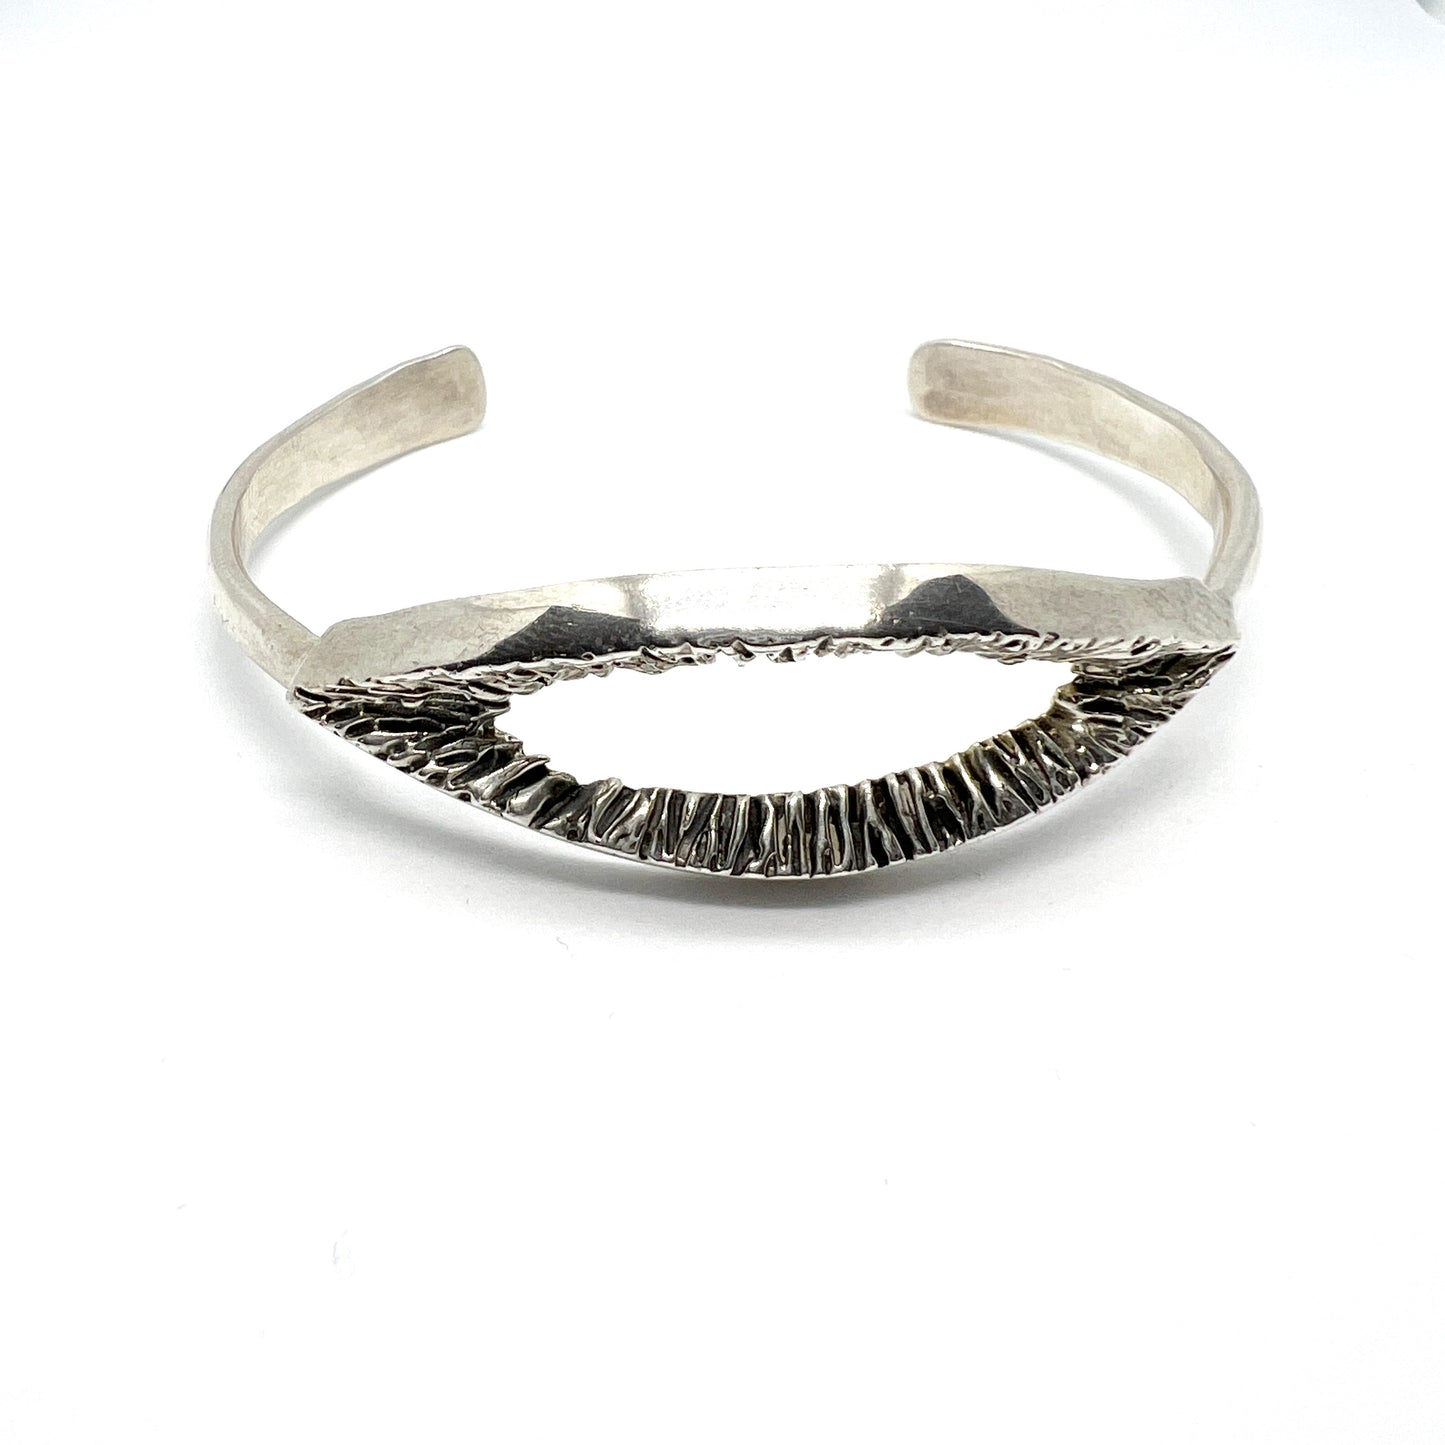 USA 1960-70s. Vintage Modernist Sterling Silver Bracelet. Makers Mark.